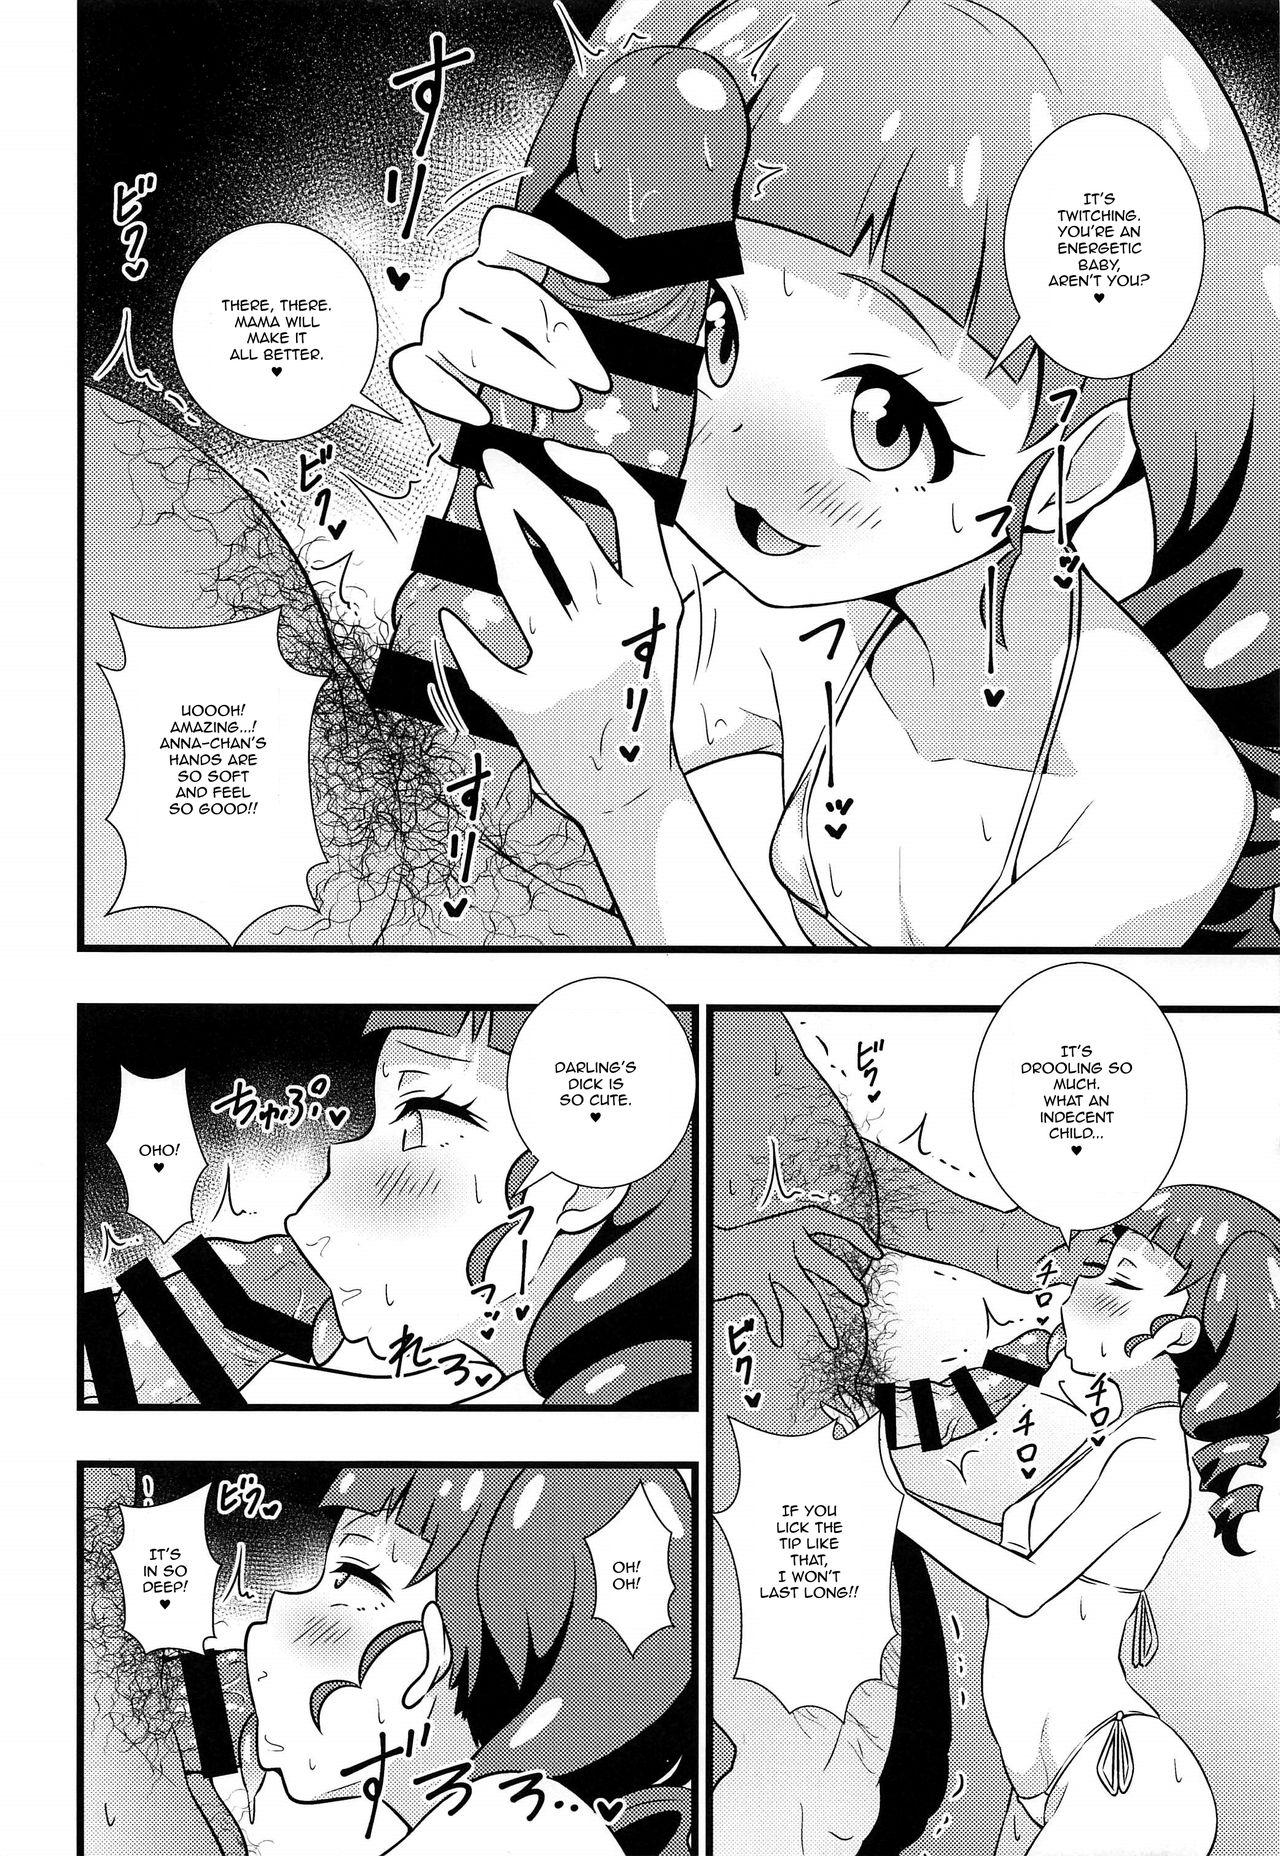 Internal Anna-chan no Hanayome Shugyou - Kiratto pri chan Creamy - Page 5